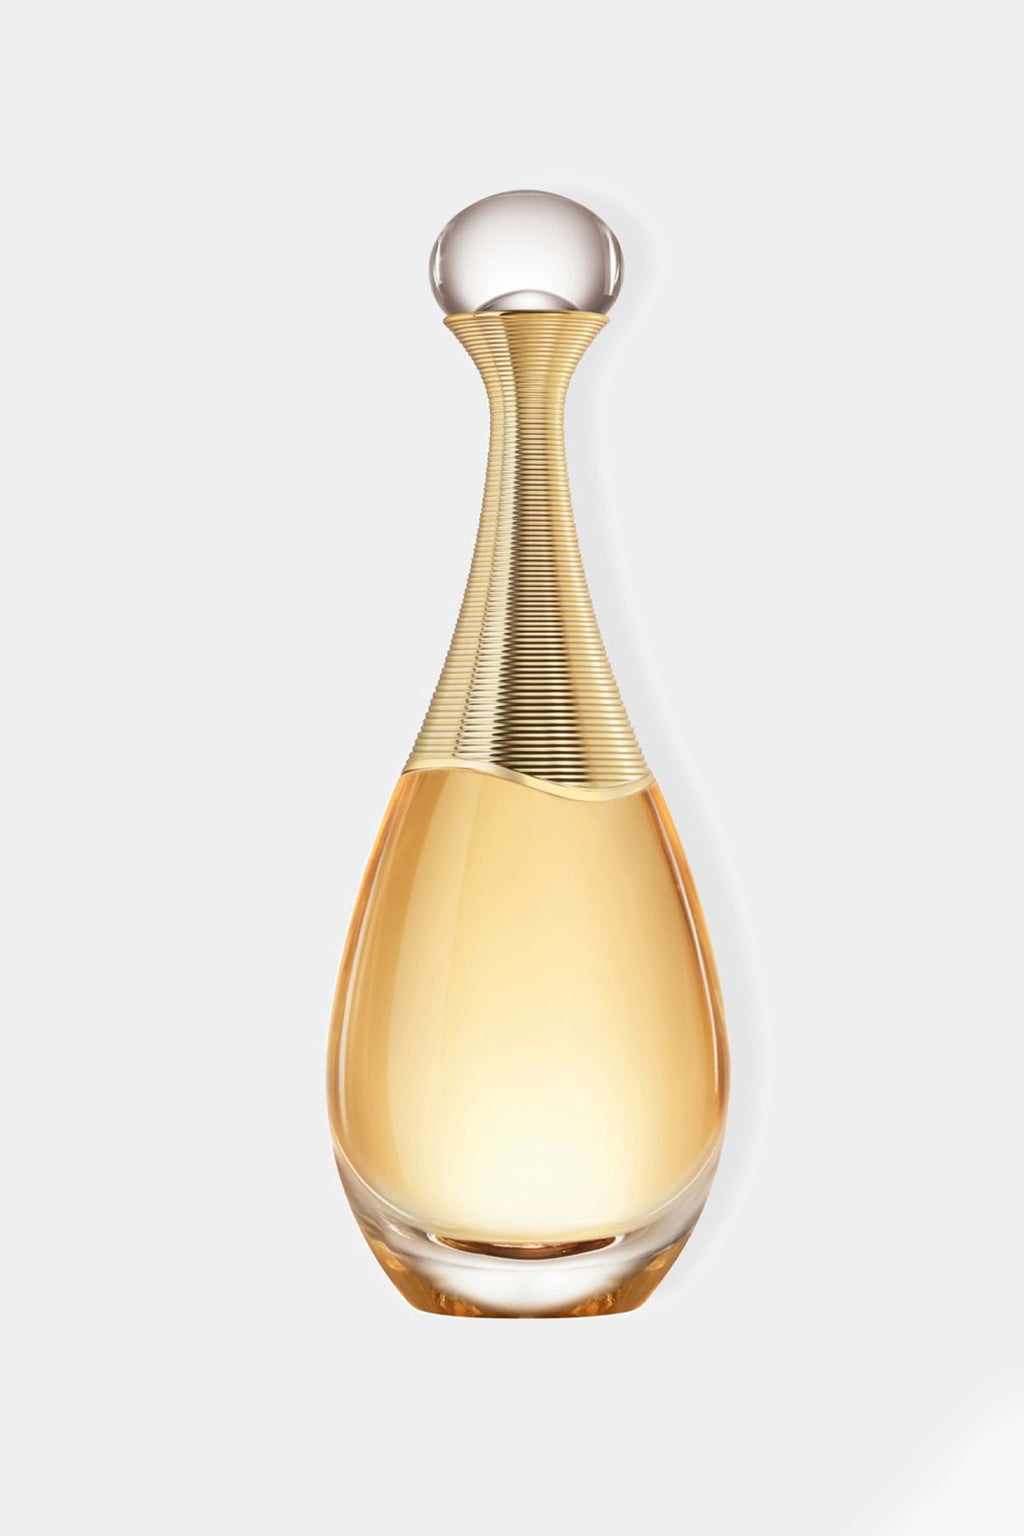 Christian Dior - Jadore Eau de Parfum